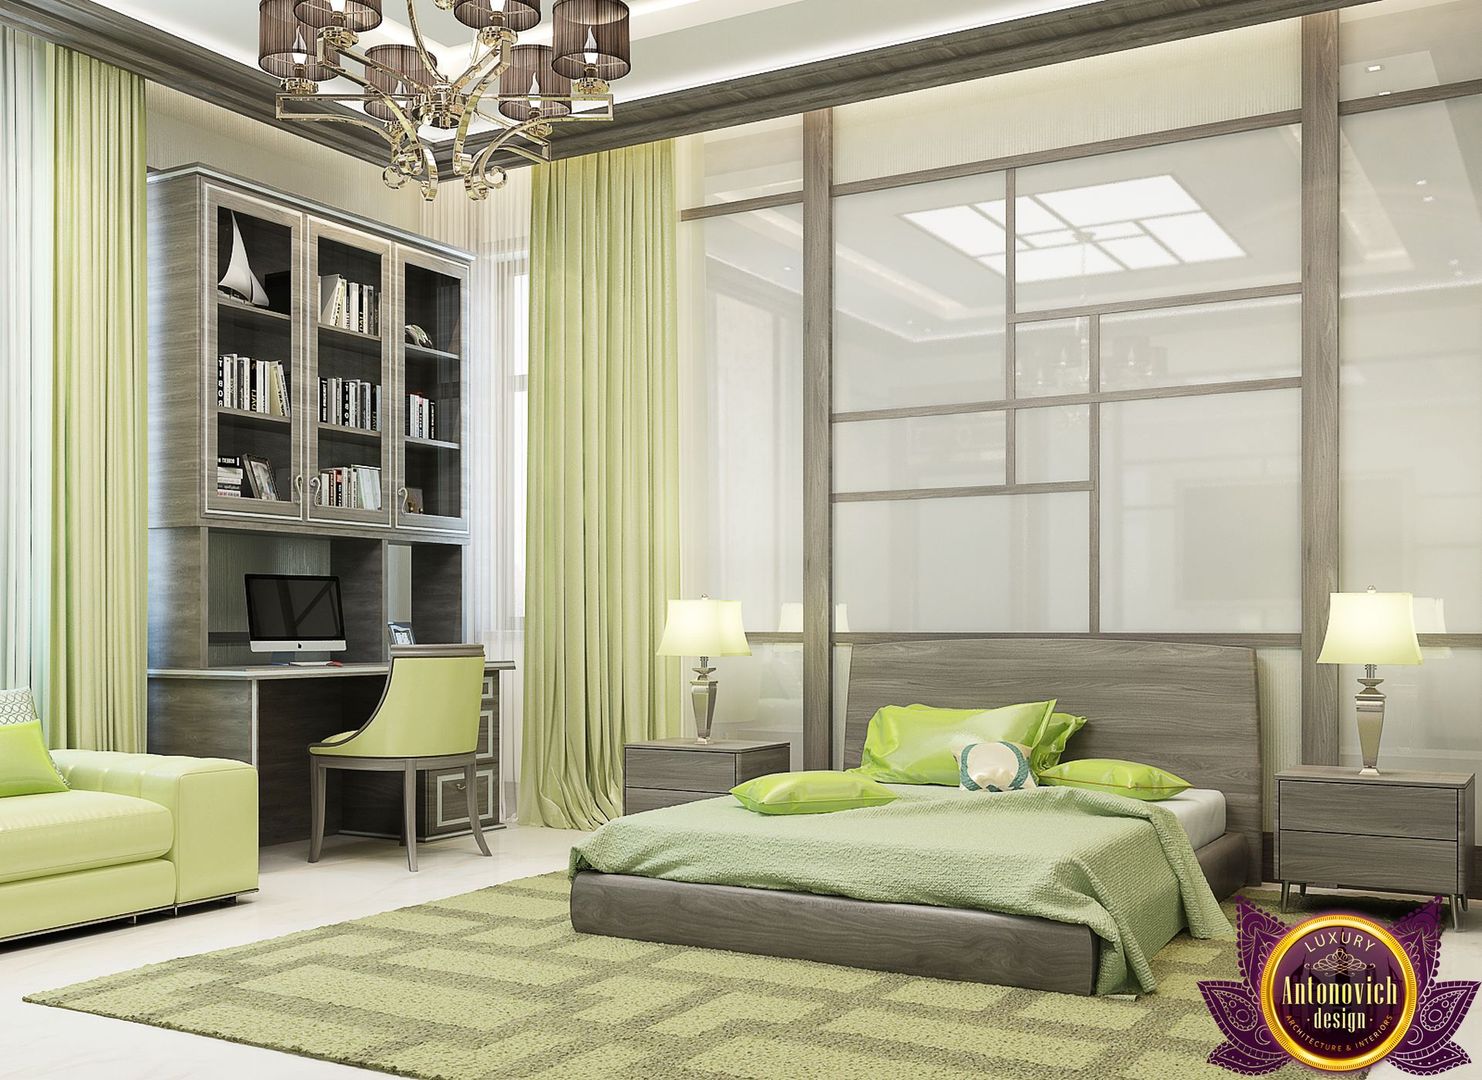 Bedroom design ideas of Katrina Antonovich 1, Luxury Antonovich Design Luxury Antonovich Design Bedroom